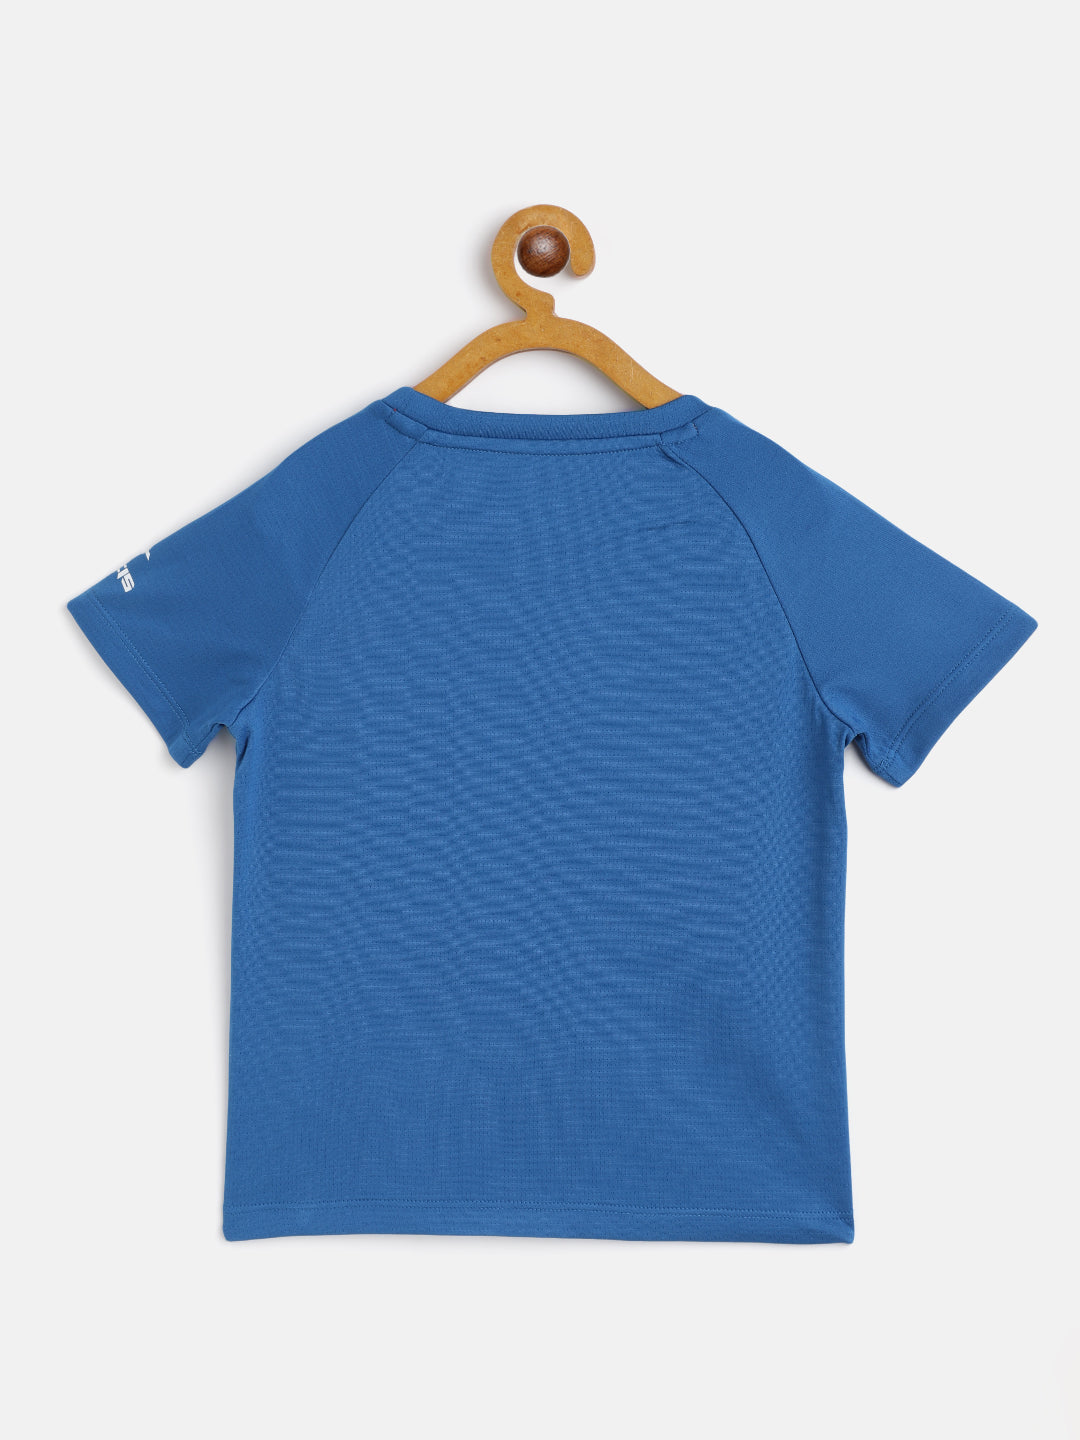 Alcis Boys Printed Blue T Shirt